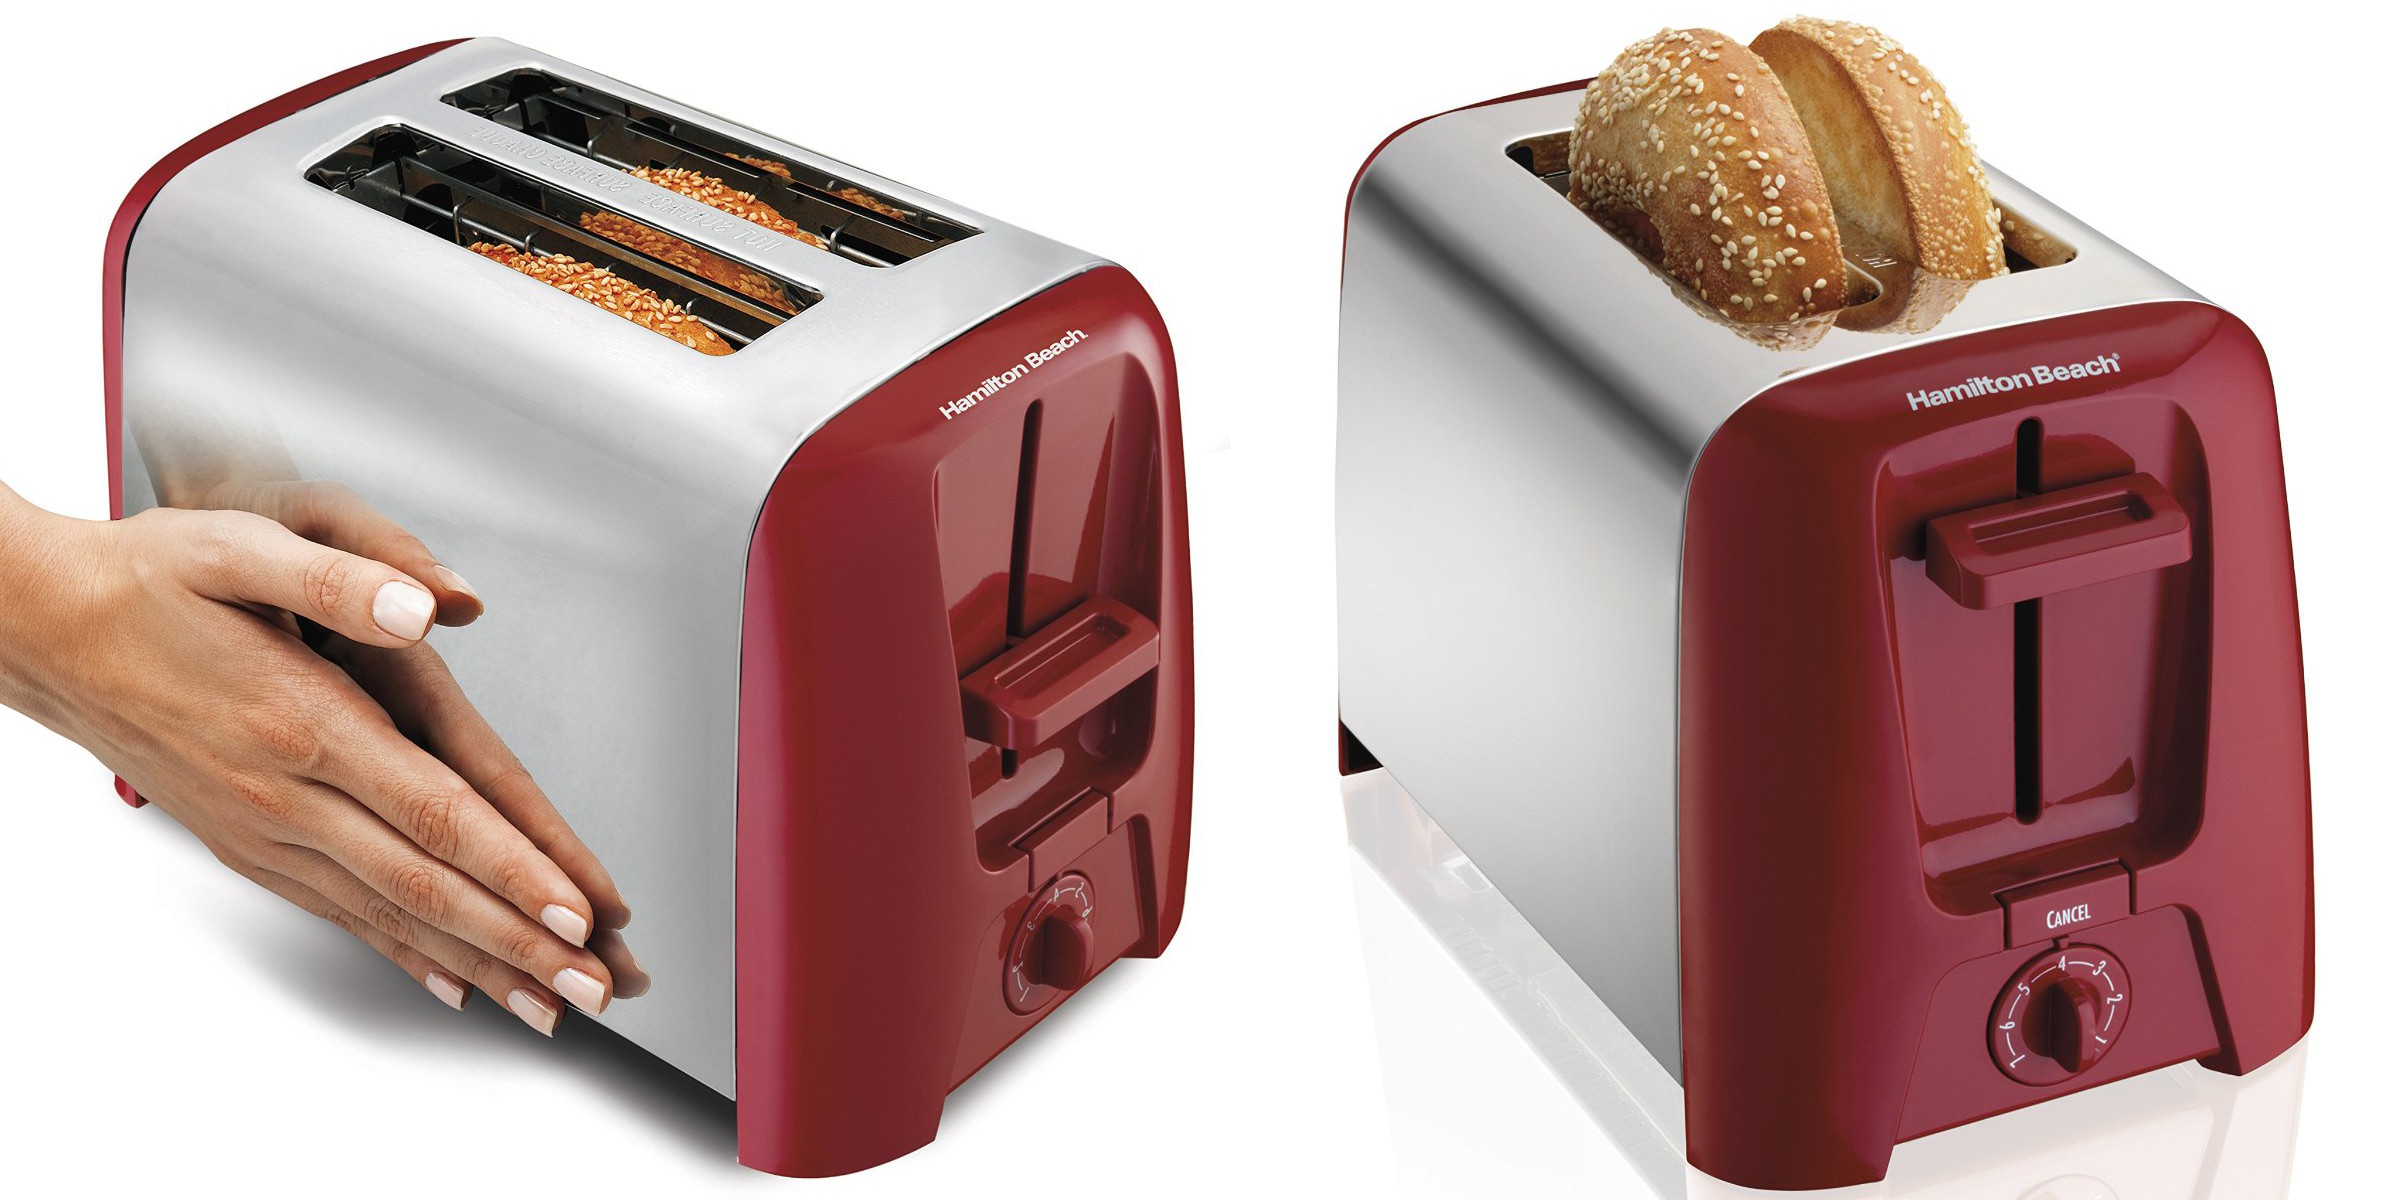 Hamilton Beach 2-Slice Toaster Oven at